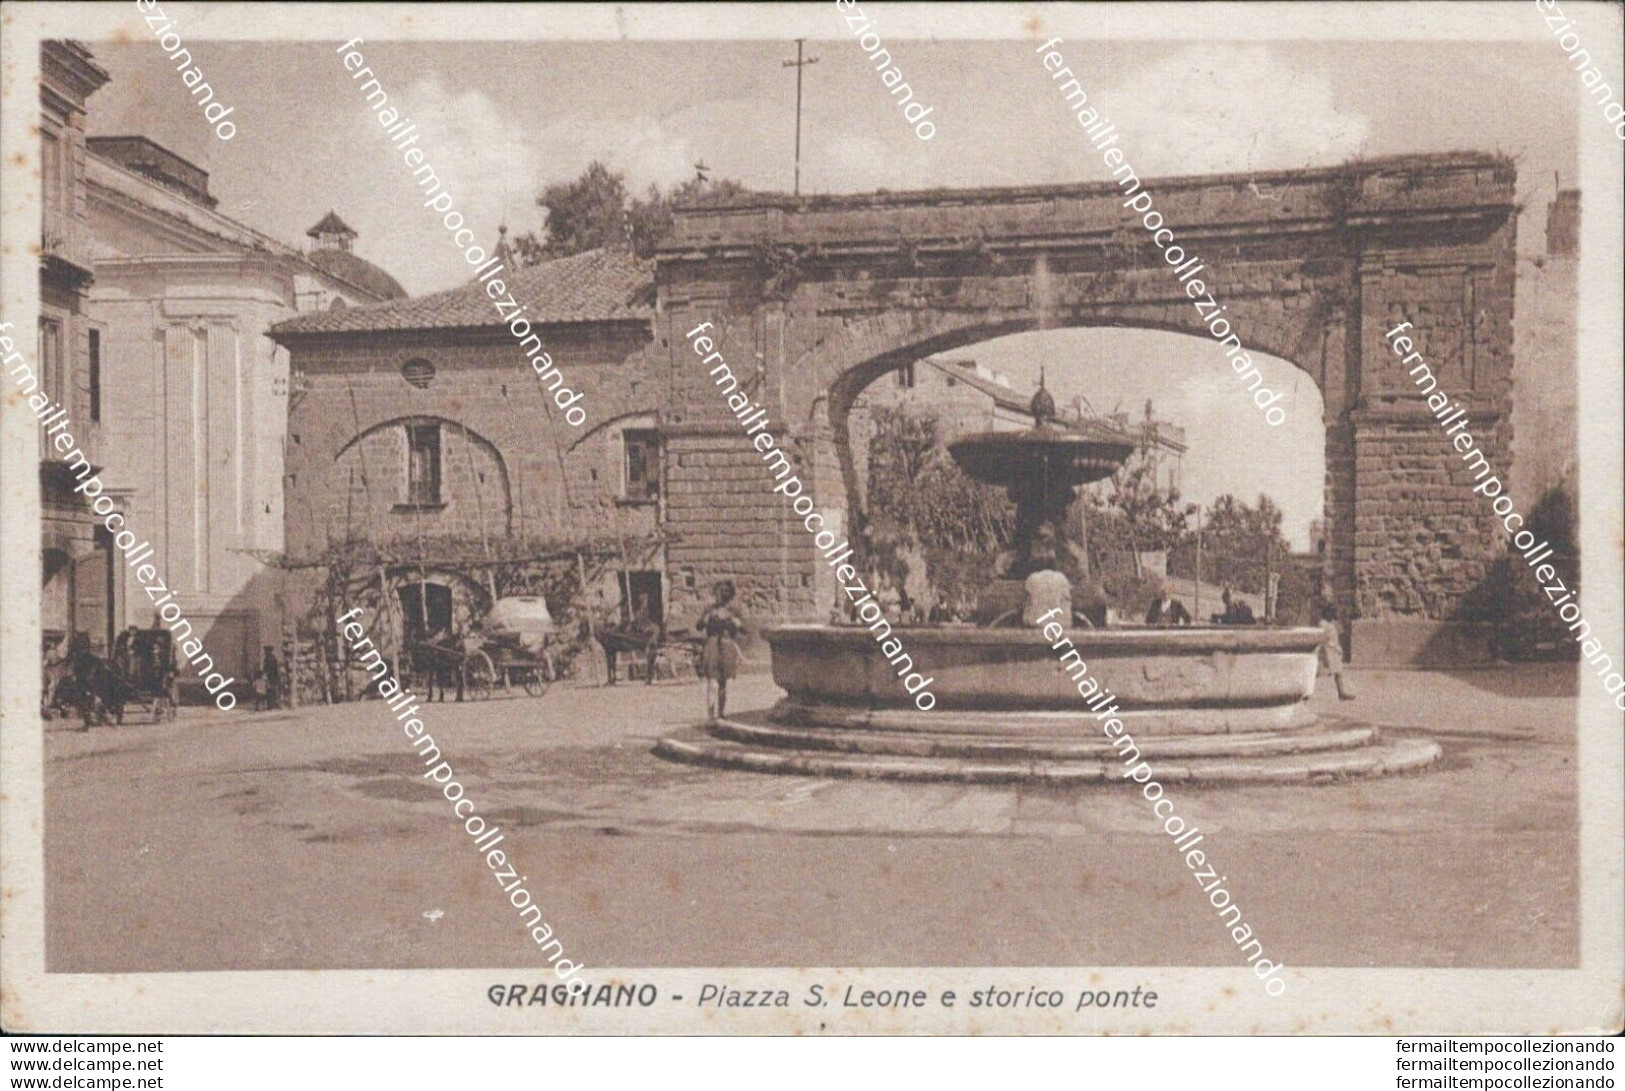 At61 Cartolina Gragnano Piazza S.leone E Storico Ponte 1939 Provincia Di Napoli - Napoli (Neapel)